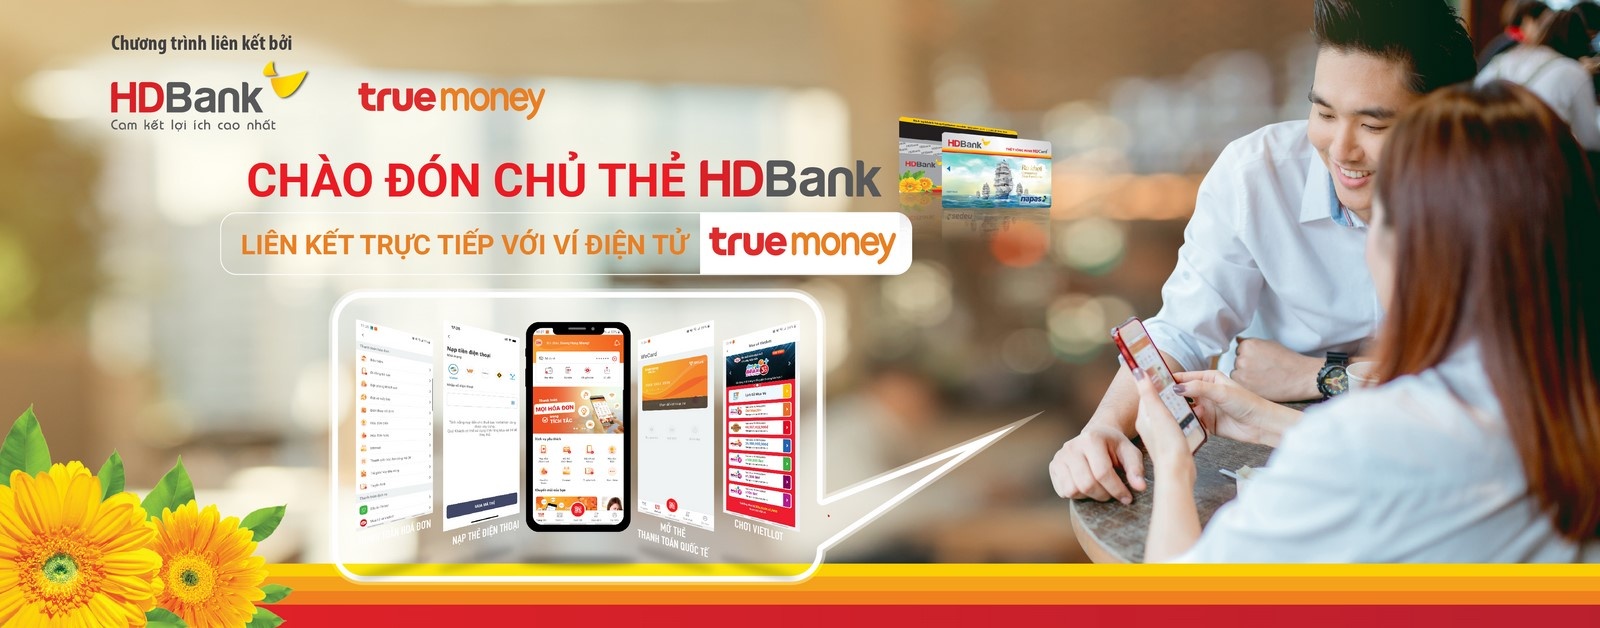 HDBank gia tăng trải nghiệm cho khách hàng với ví Truemoney